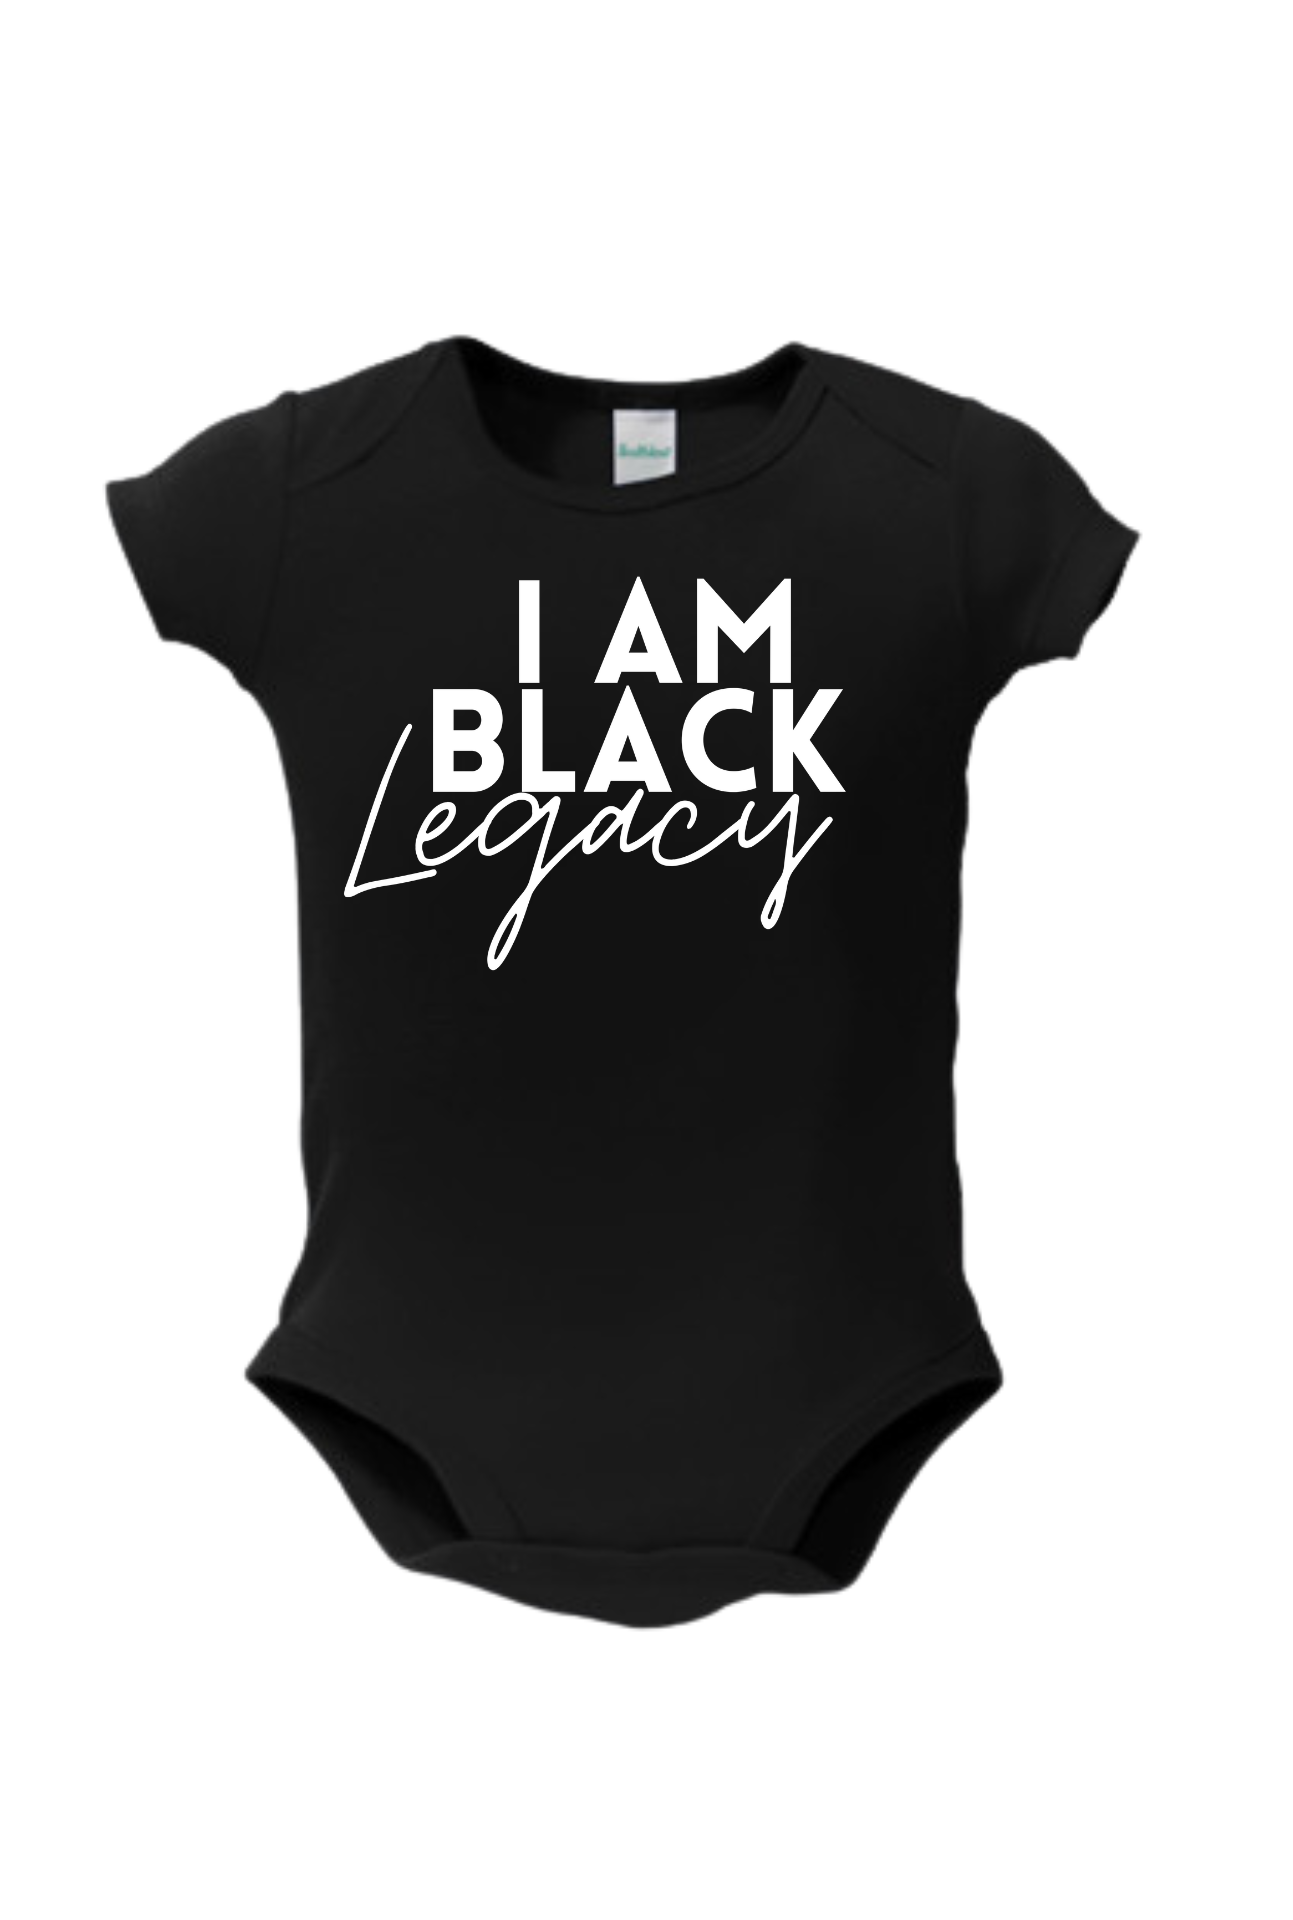 Black Legacy Baby Onesies